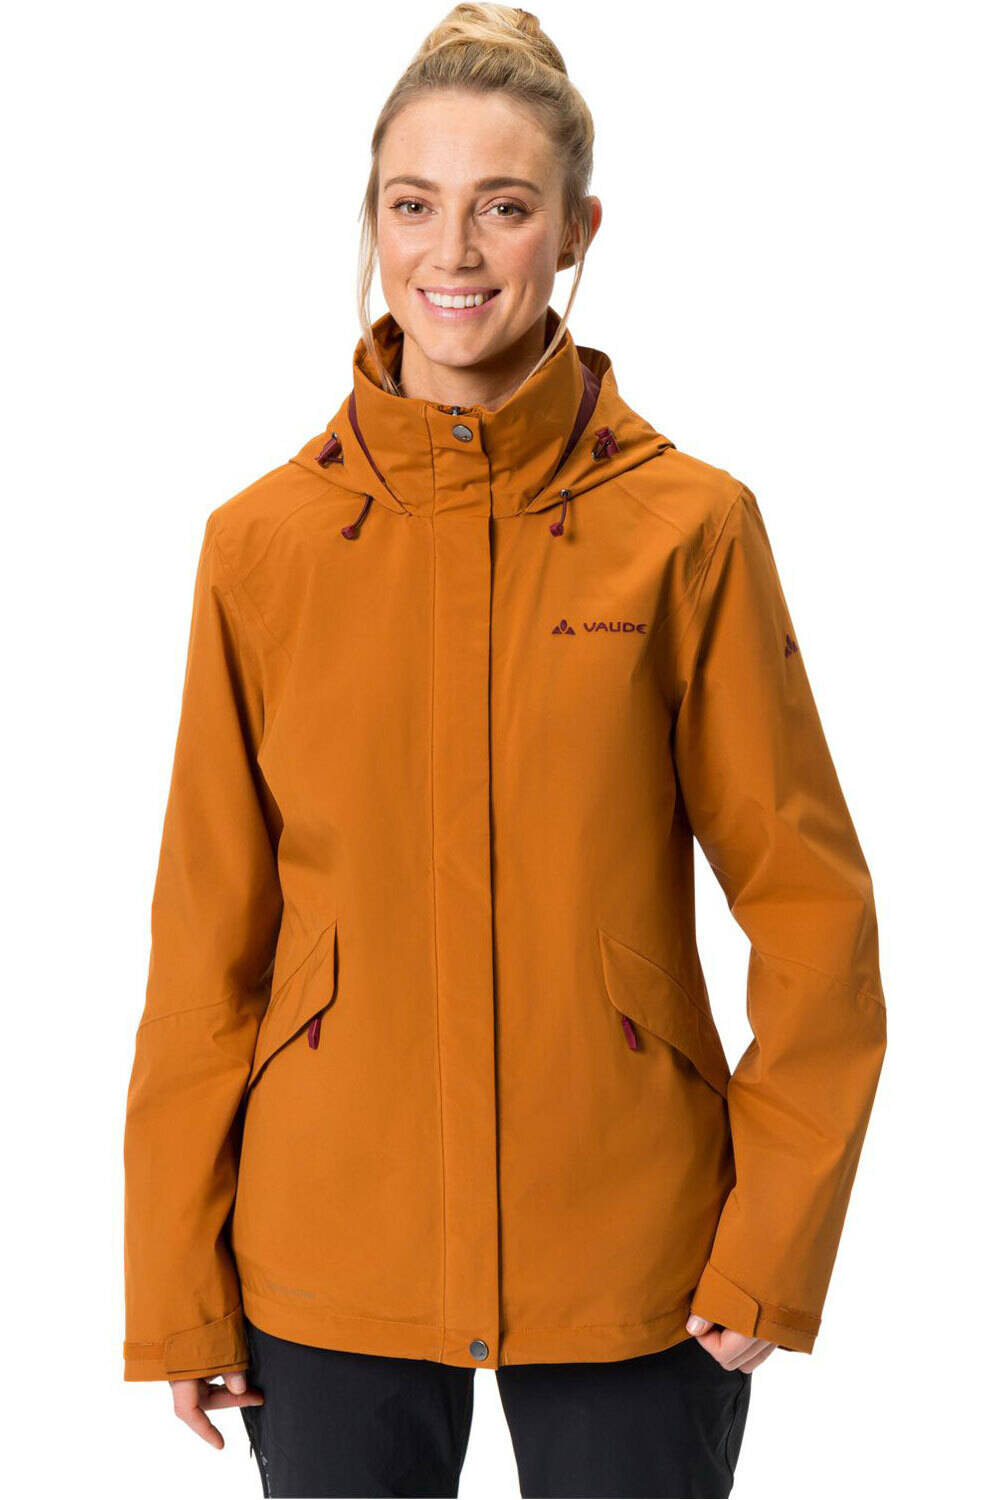 Vaude chaqueta impermeable insulada mujer Women's Rosemoor 3in1 Jacket vista frontal